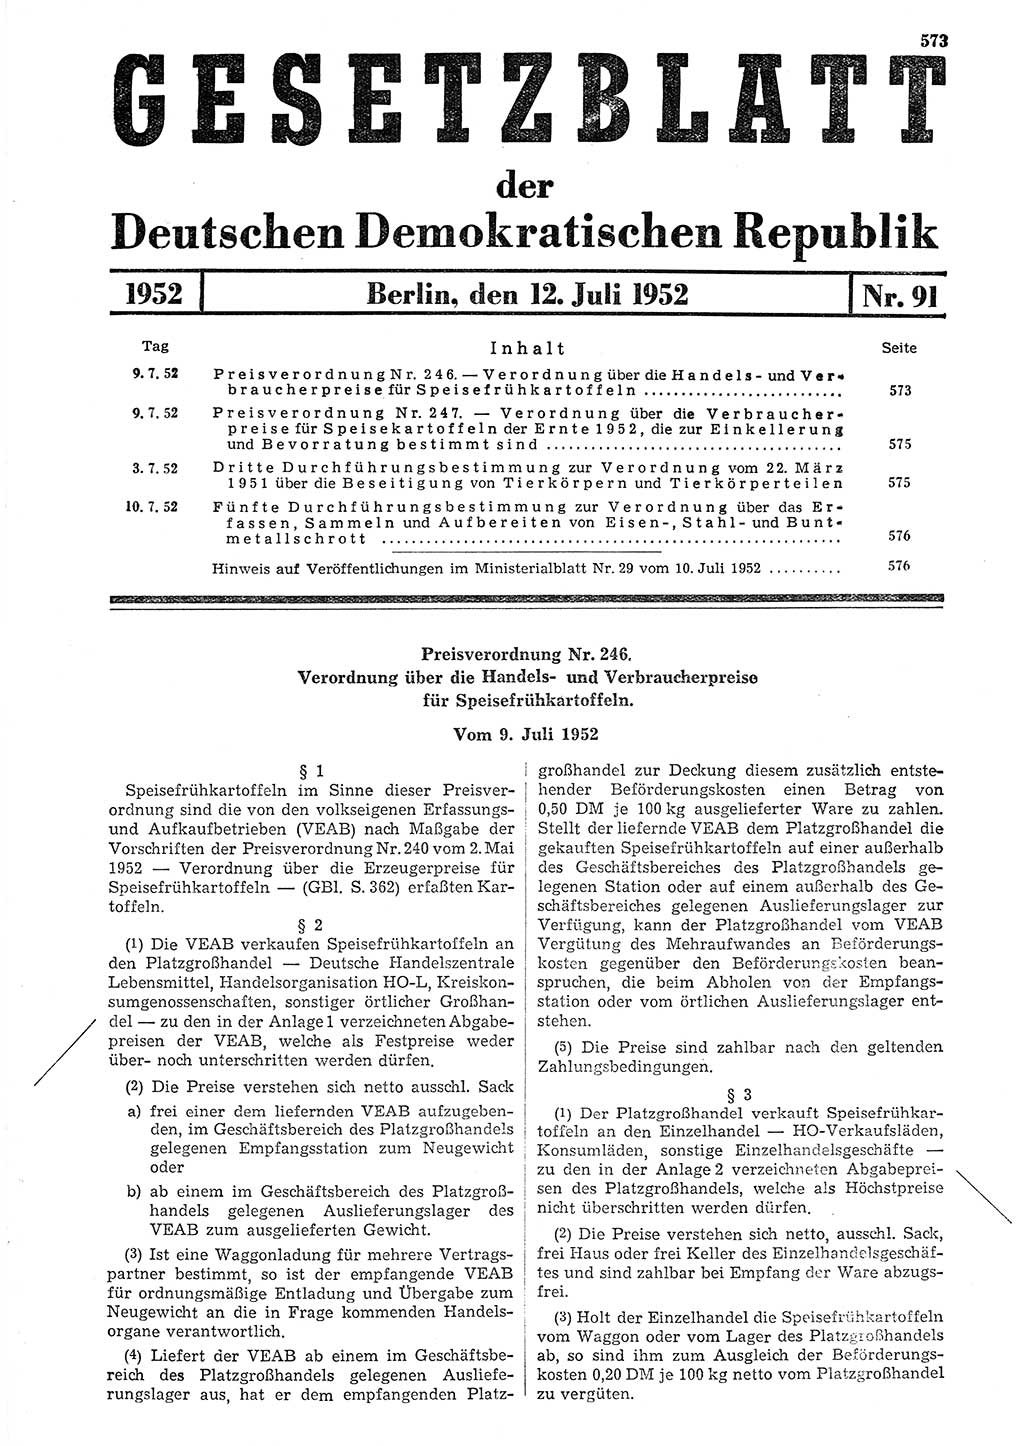 Gesetzblatt (GBl.) der Deutschen Demokratischen Republik (DDR) 1952, Seite 573 (GBl. DDR 1952, S. 573)